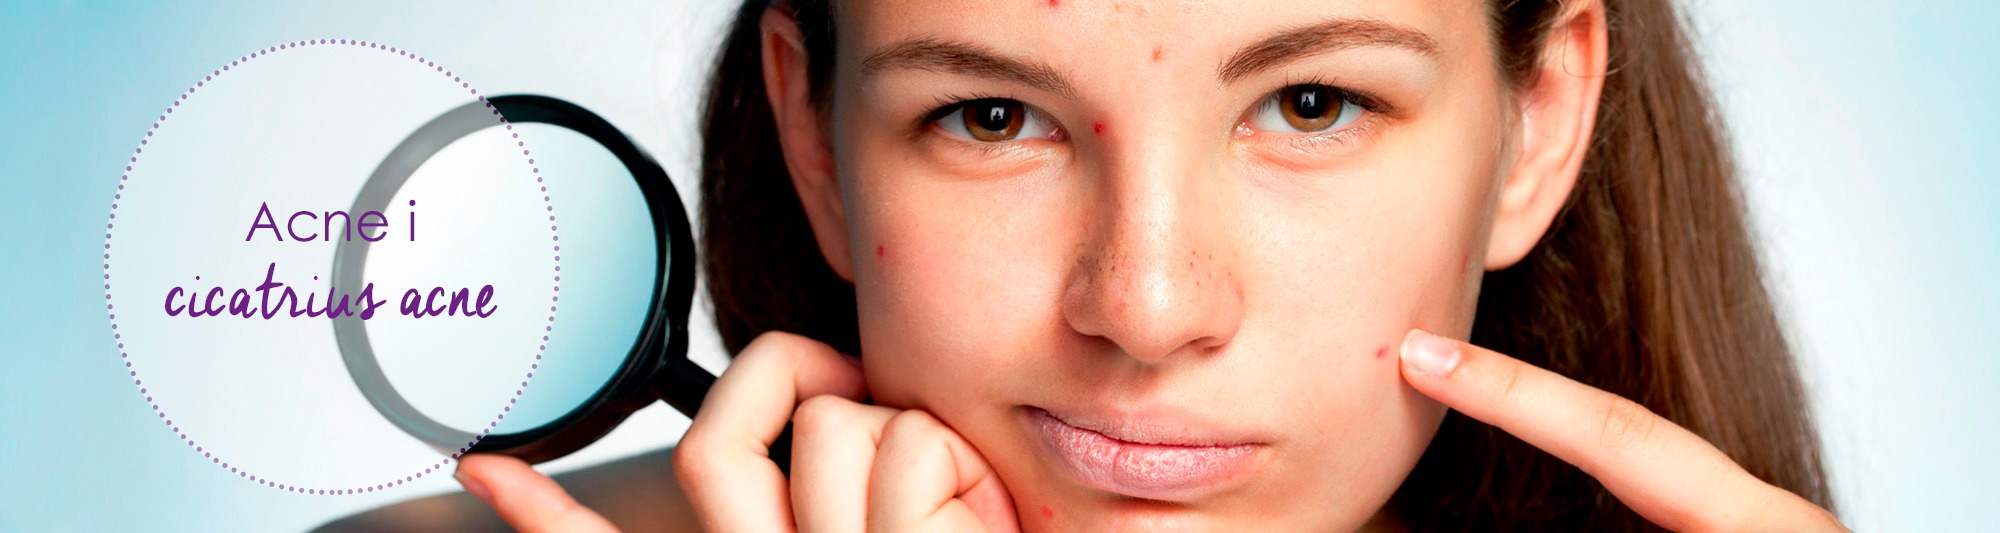 acne, marcas acne, marques acne, cicatrius acne, cicatrius, acné, acne andorra